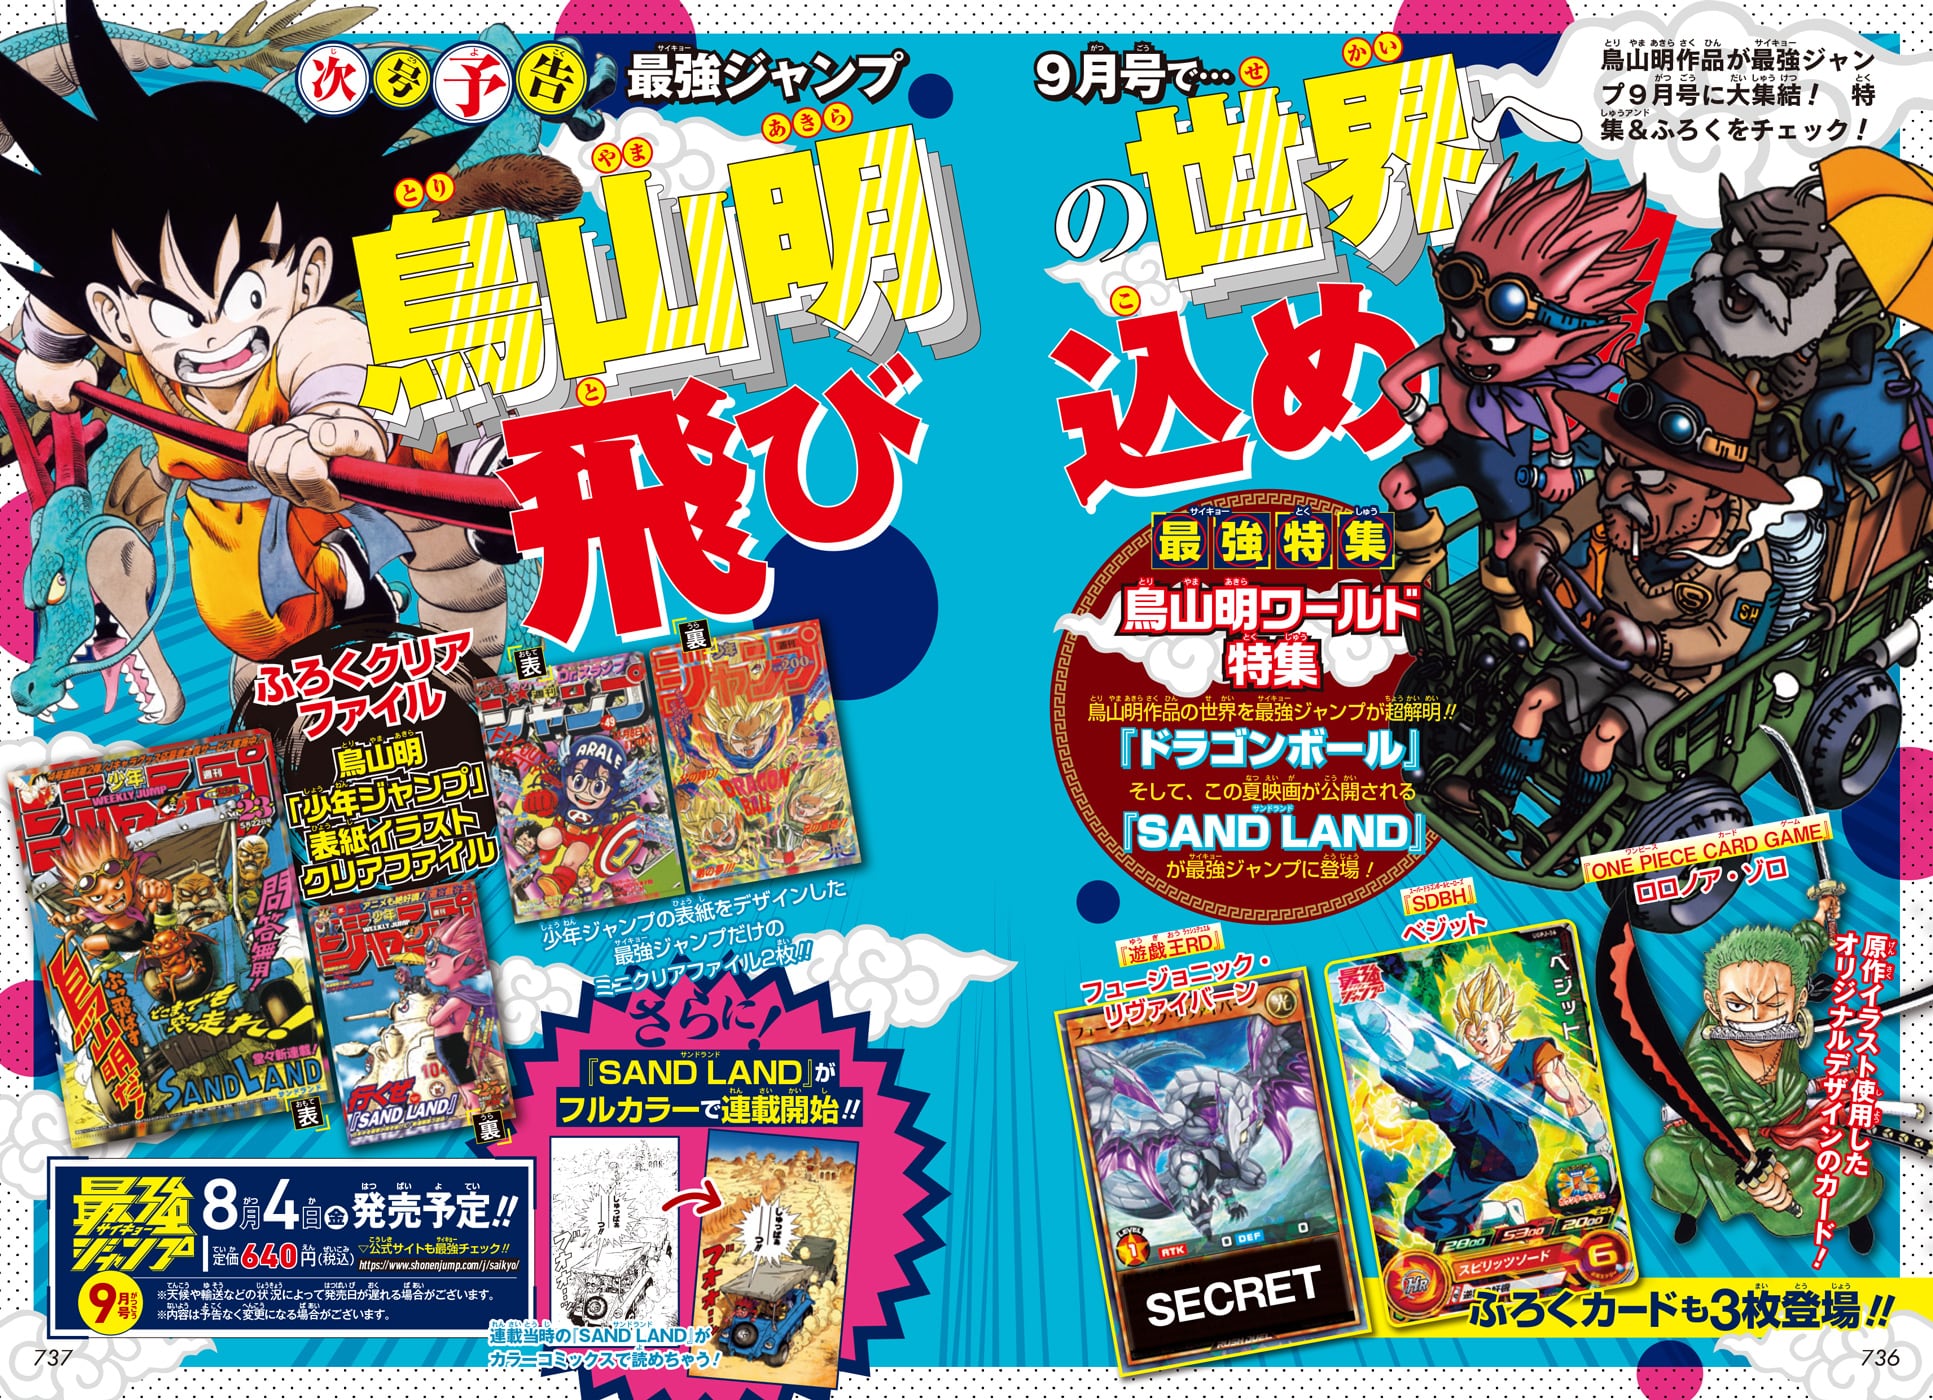 VIZ  Read Dragon Ball Super, Chapter 92 Manga - Official Shonen Jump From  Japan